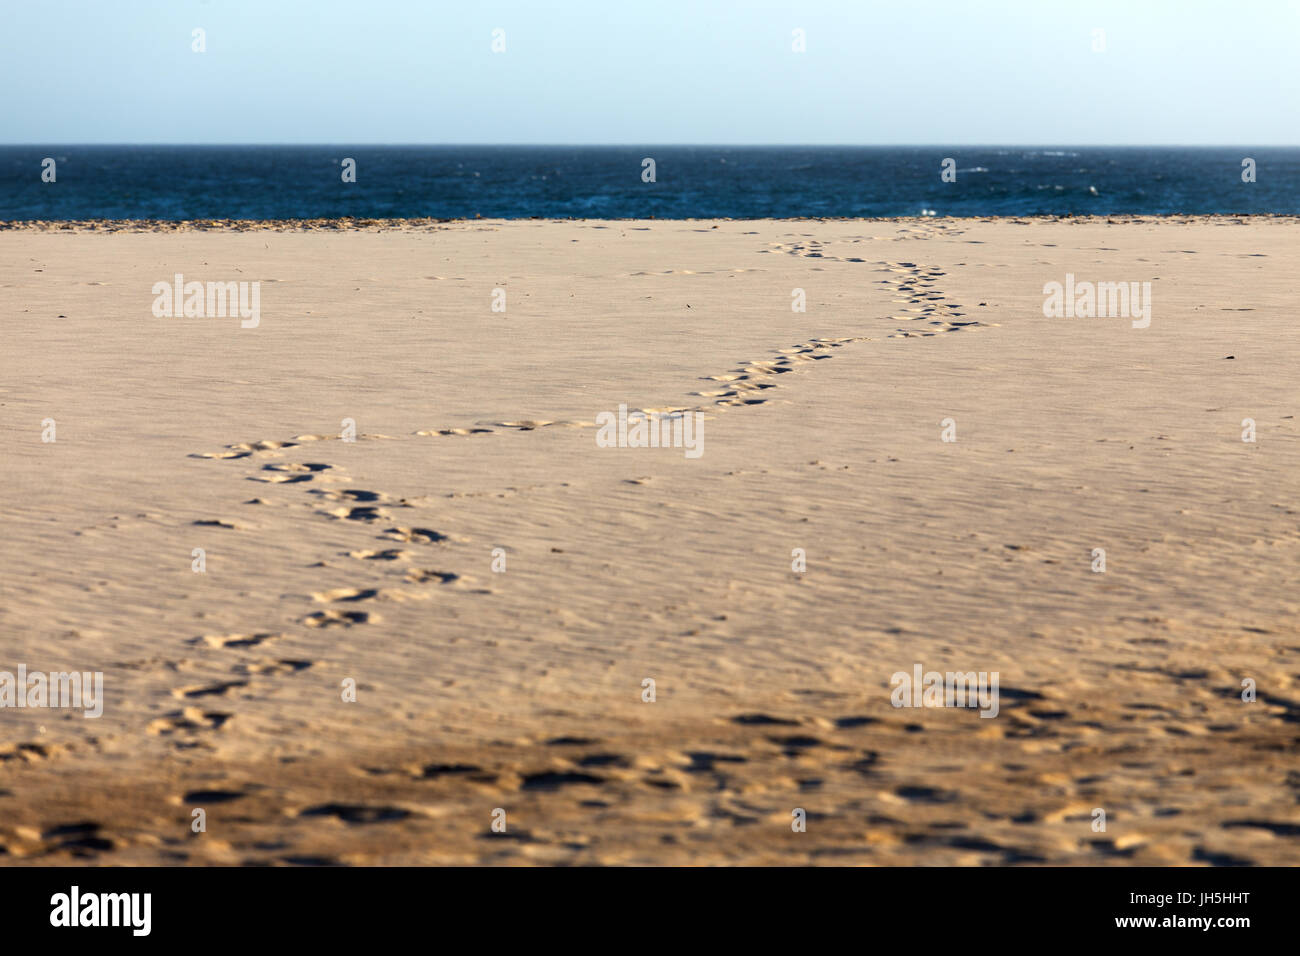 Des traces de pas dans le sable sur une plage d'été s'enroulant vers le bleu profond de l'océan et l'horizon lointain. Banque D'Images